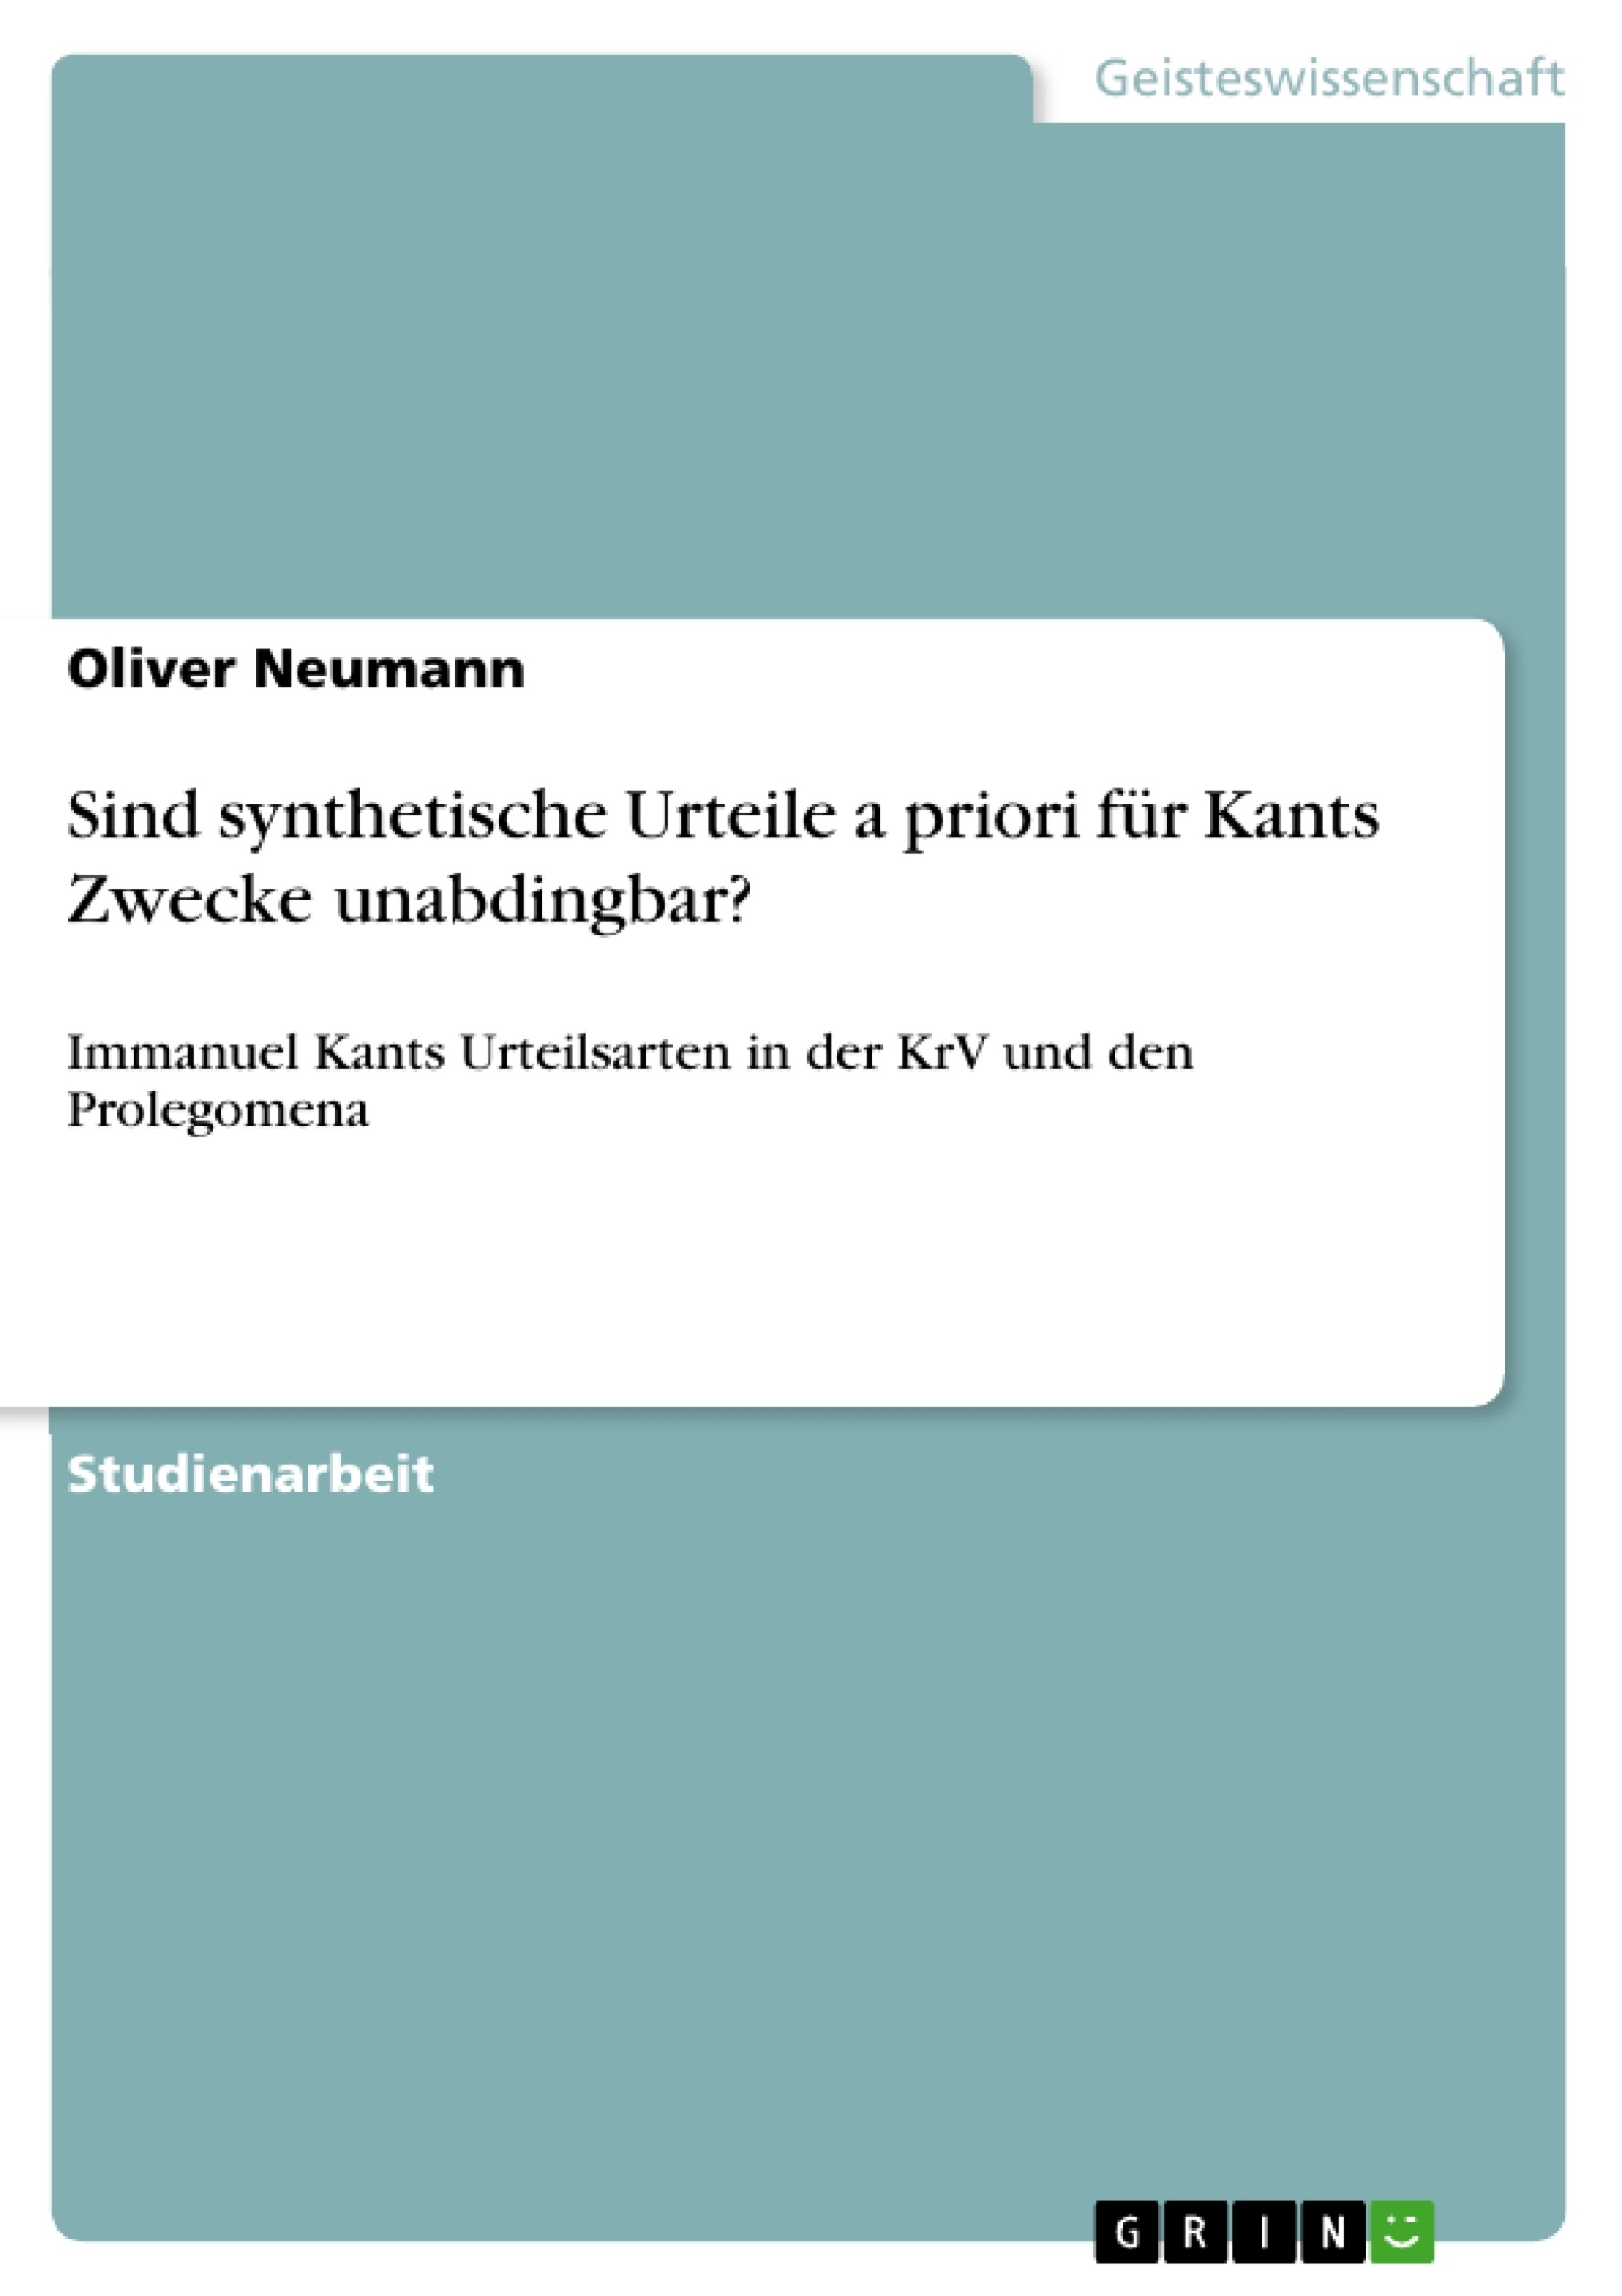 Title: Sind synthetische Urteile a priori für Kants Zwecke unabdingbar?